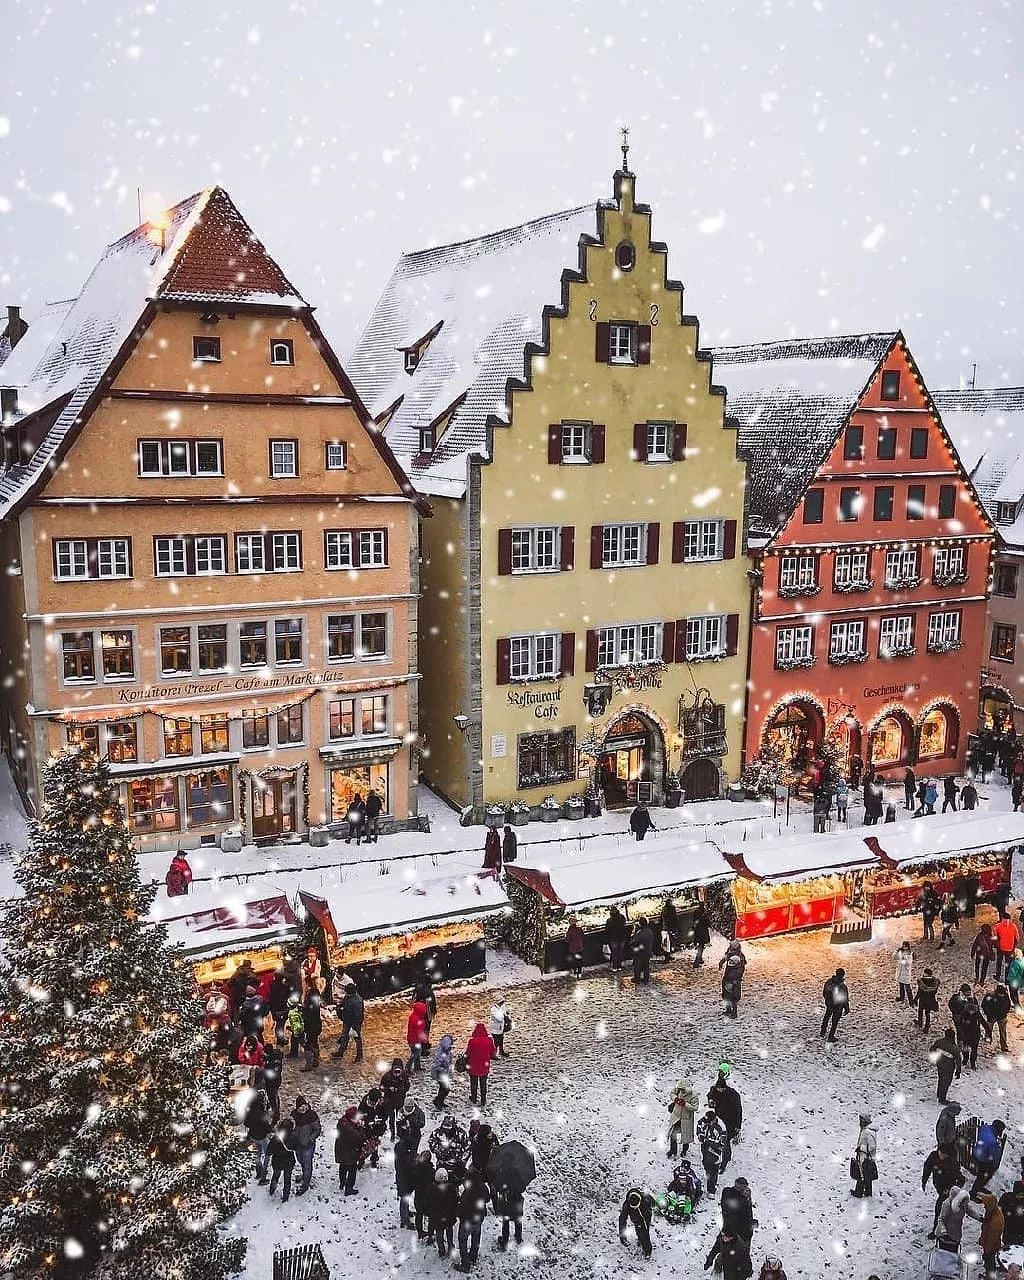 送给大人的5个圣诞小镇:拥抱麋鹿和雪人,像北欧童话那样去生活